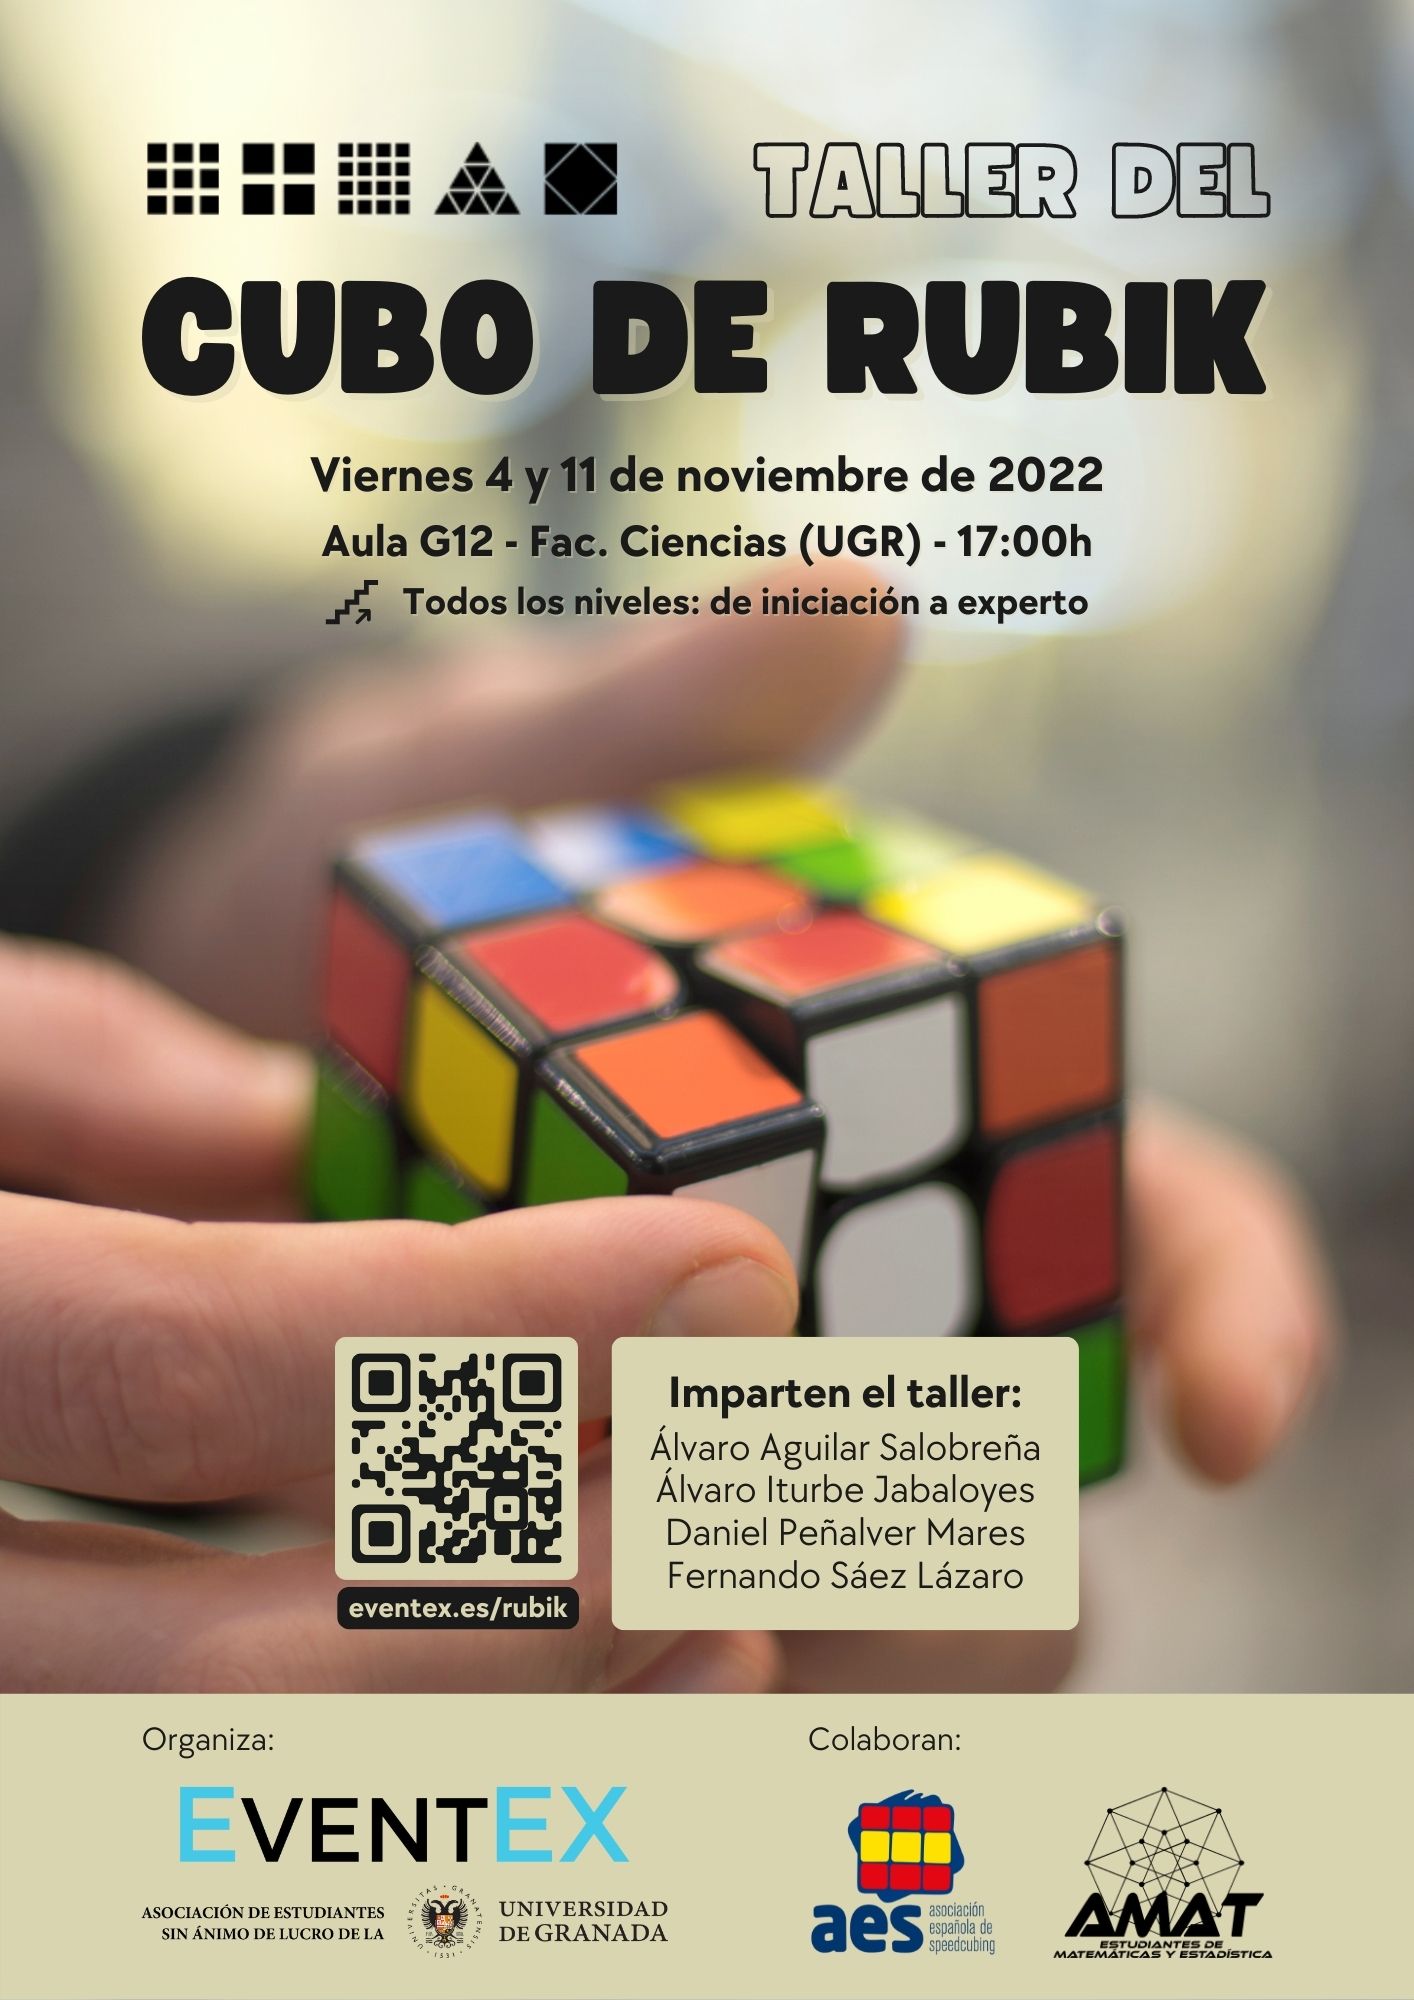 Taller del Cubo de Rubik